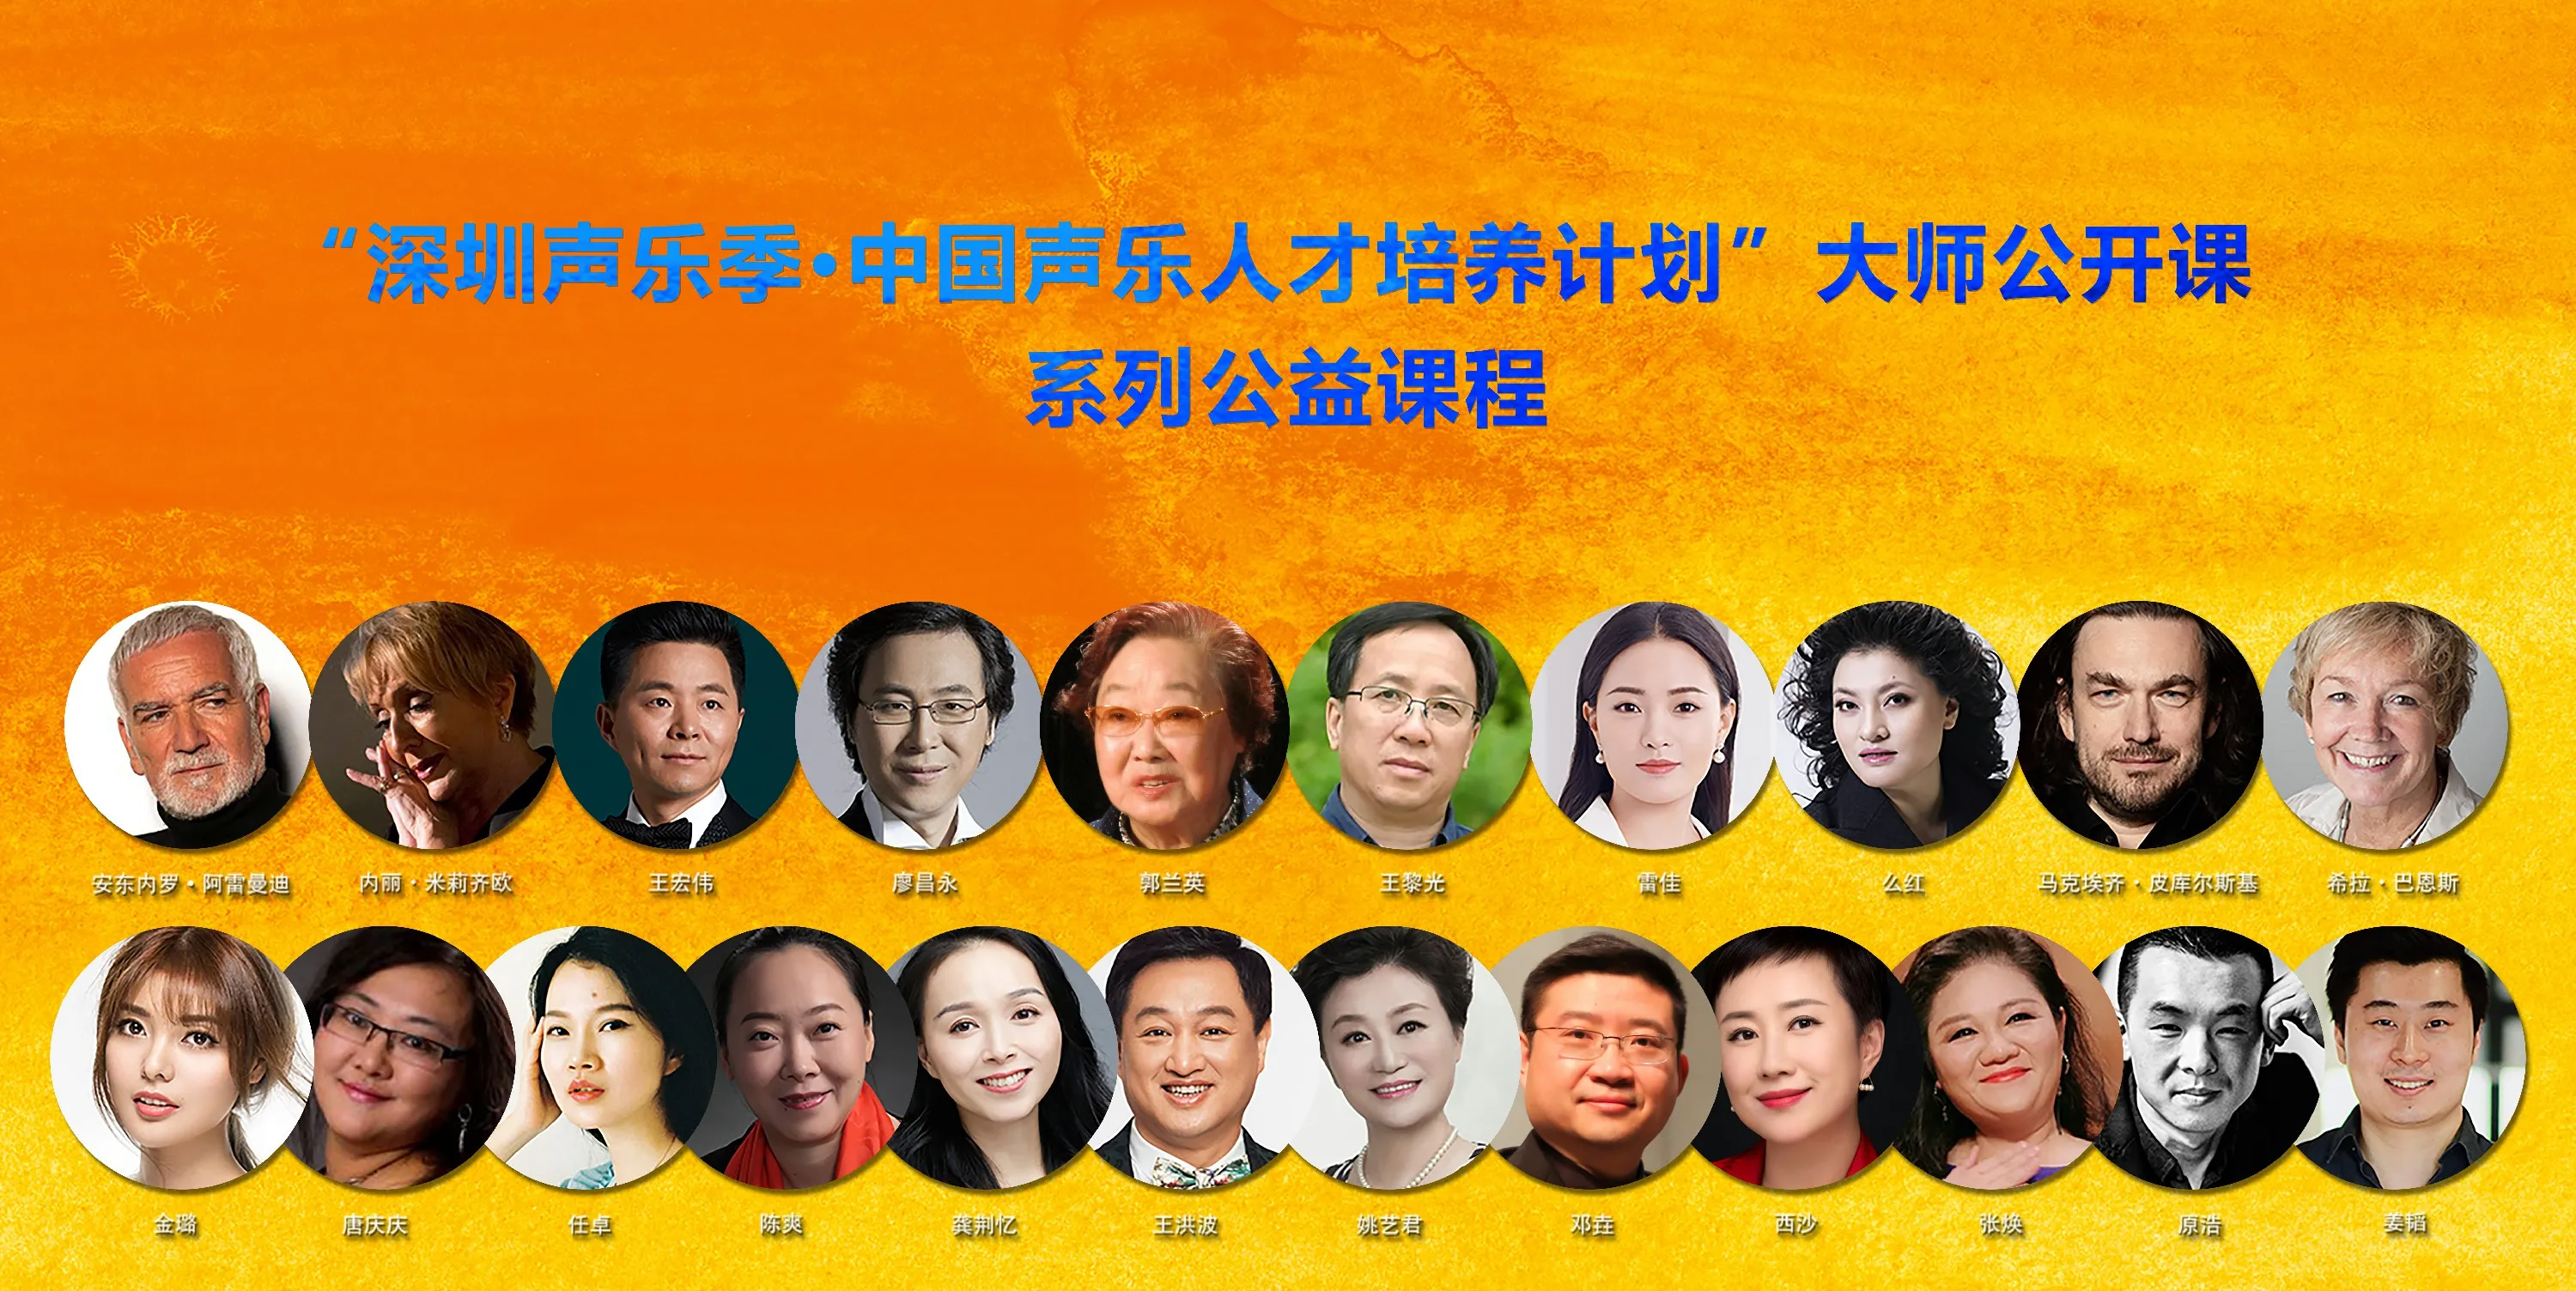  Lei Jia 发布“中国声乐人才培养计划·大师公开课”系列公益课程1.jpg